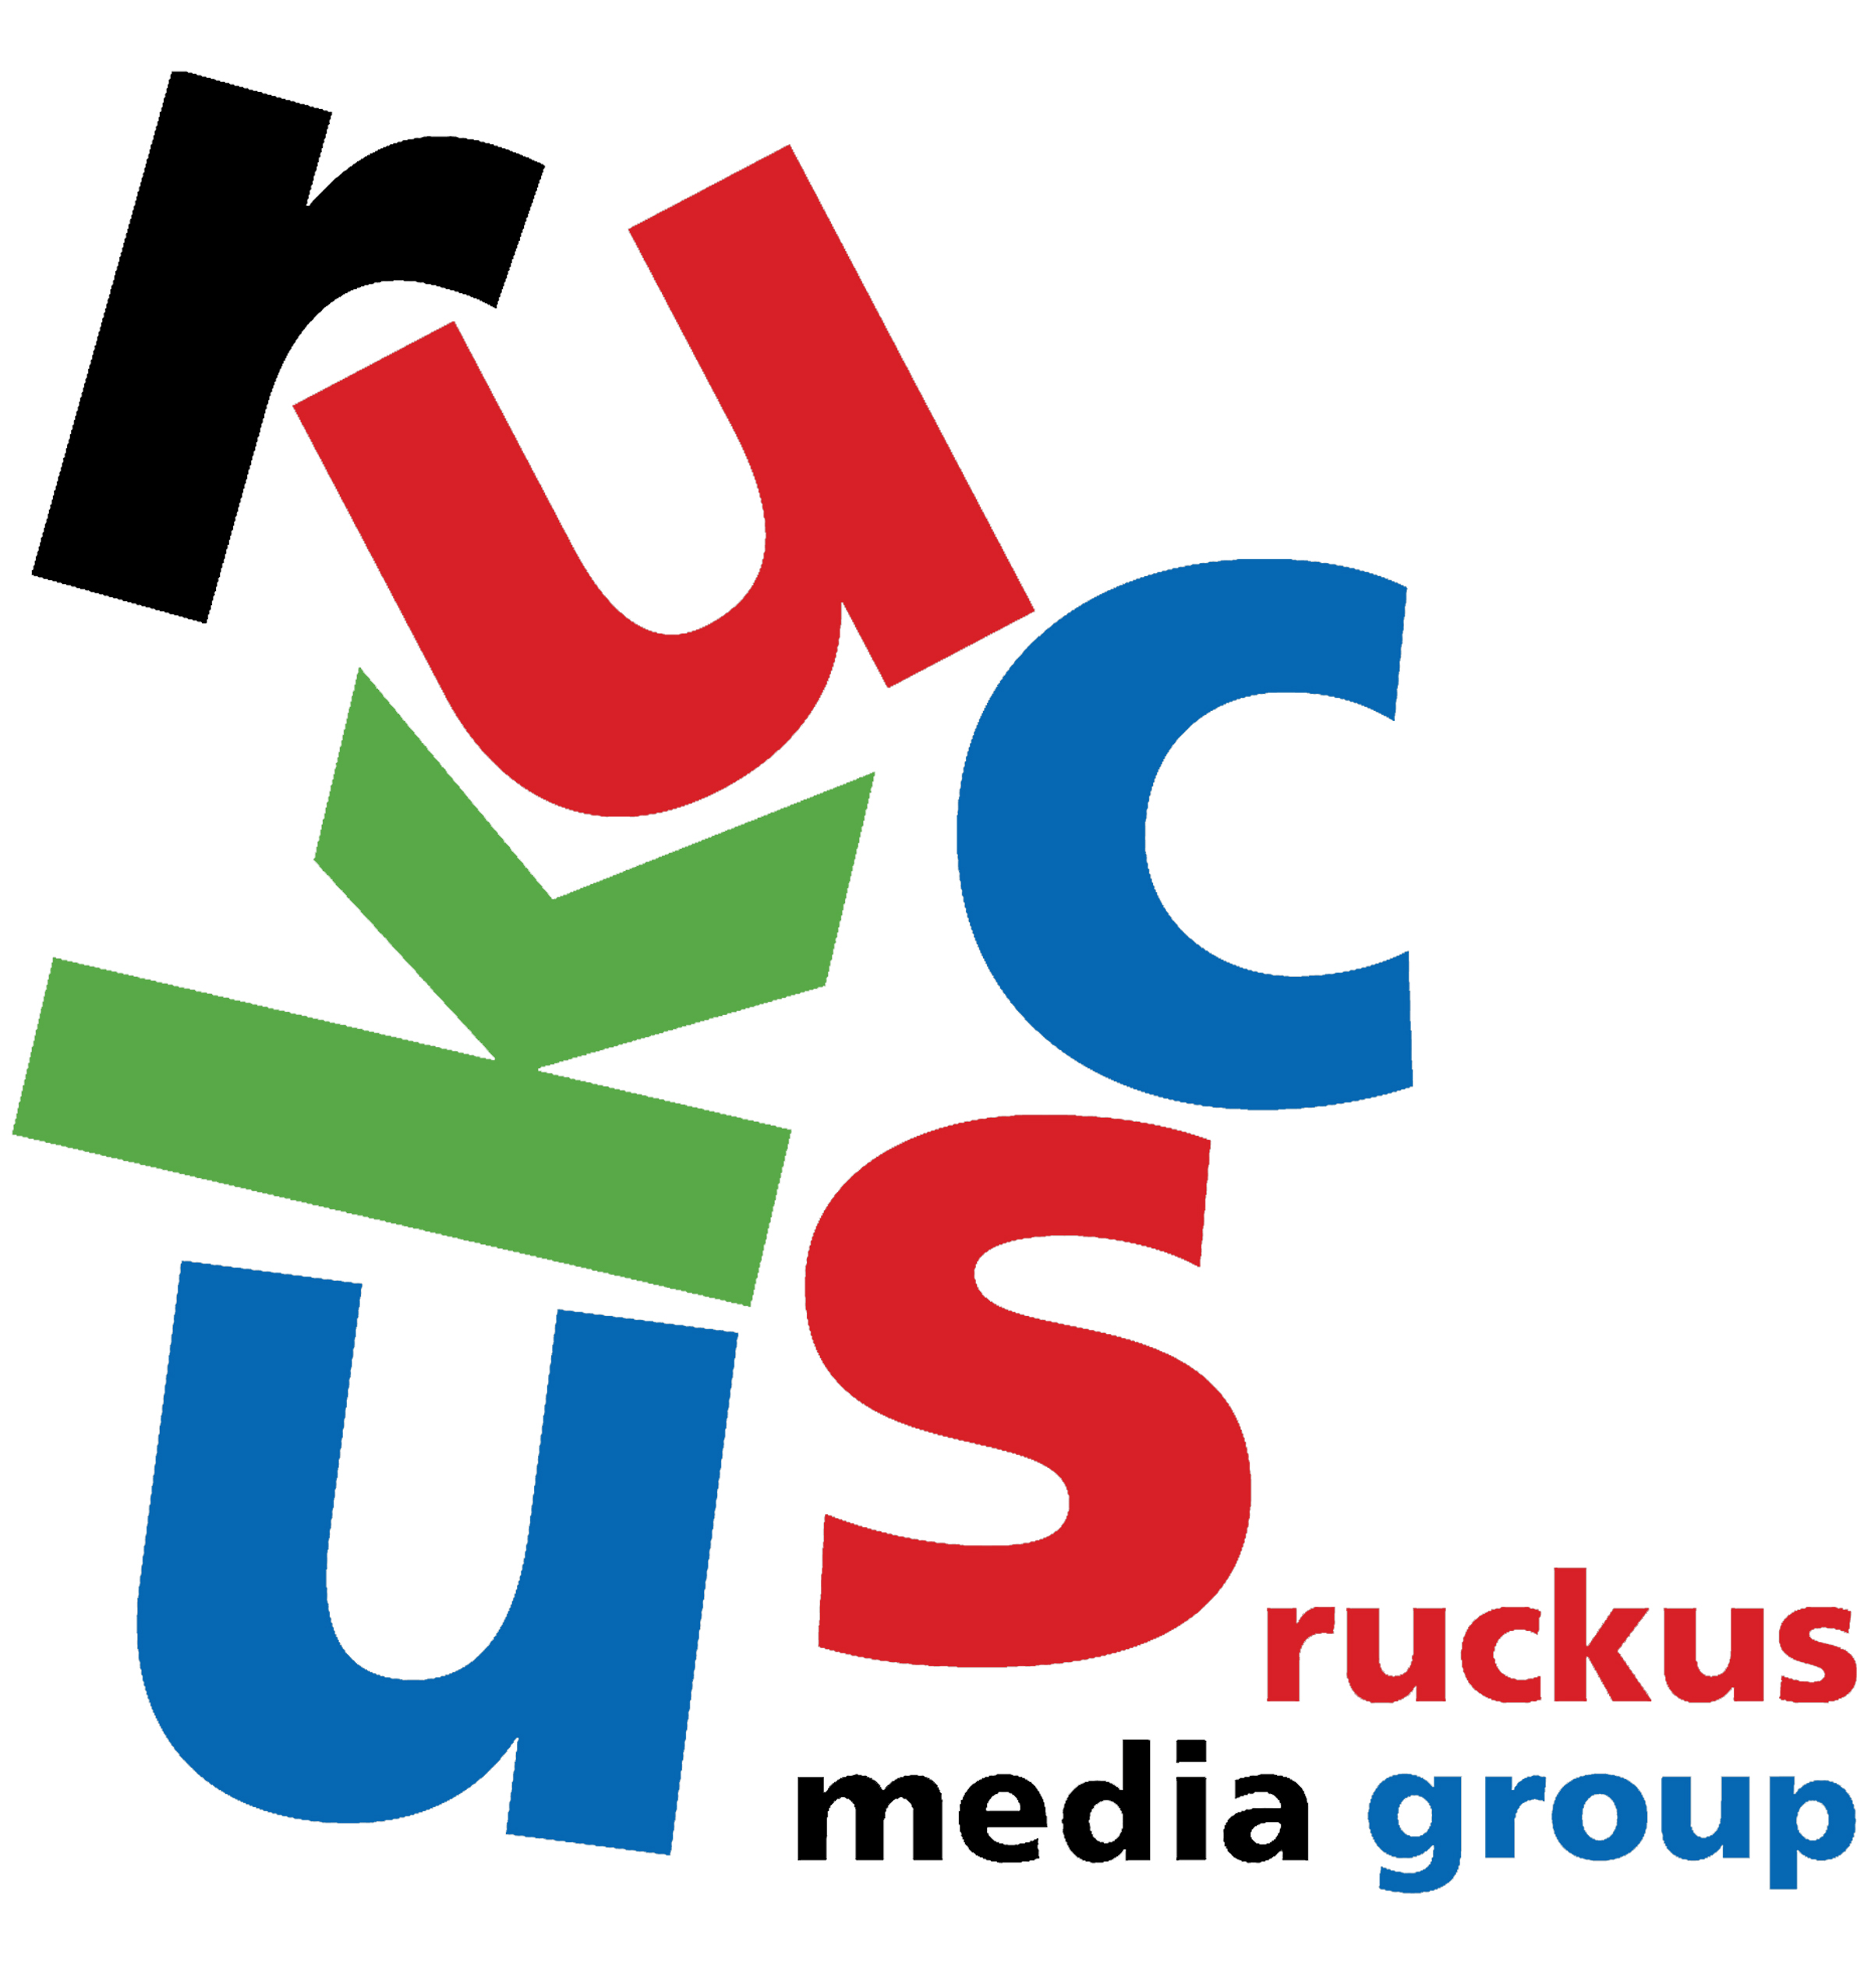 RUCKUS-MEDIA-GROUP-LOGO.jpg